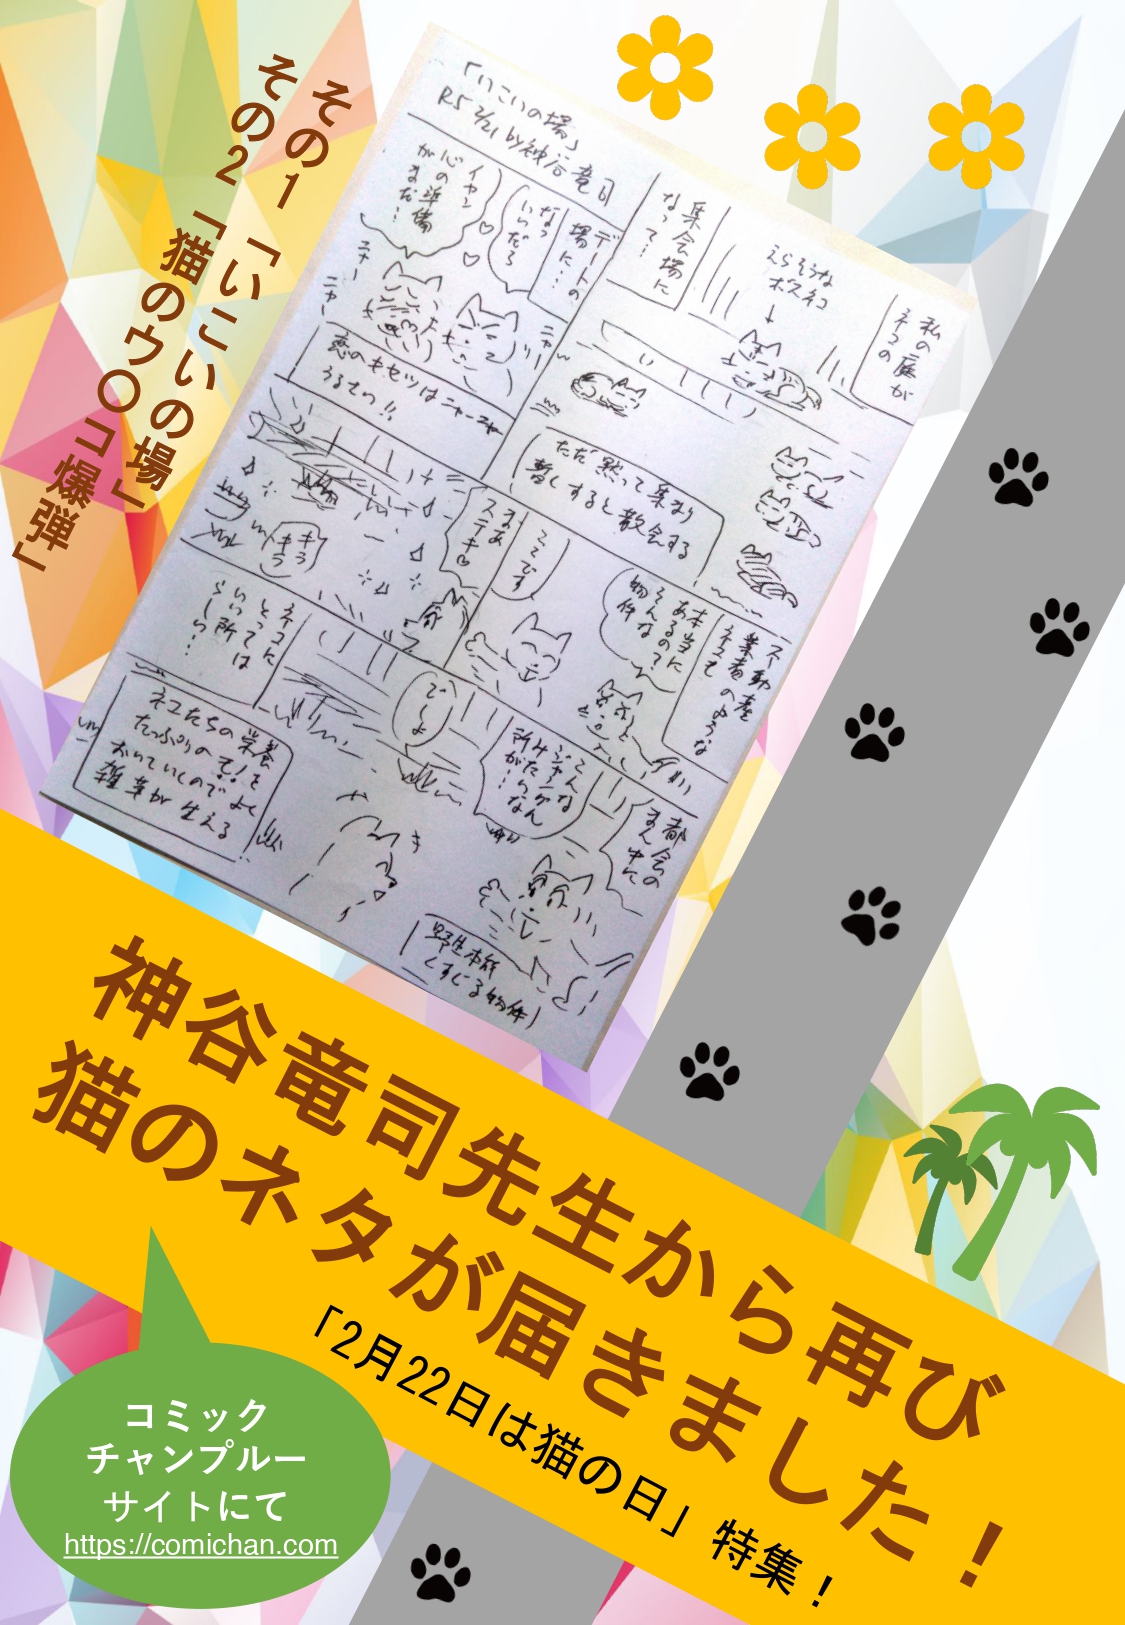 神谷竜司先生から再び猫のネタが届きました！「2月22日は猫の日」特集！